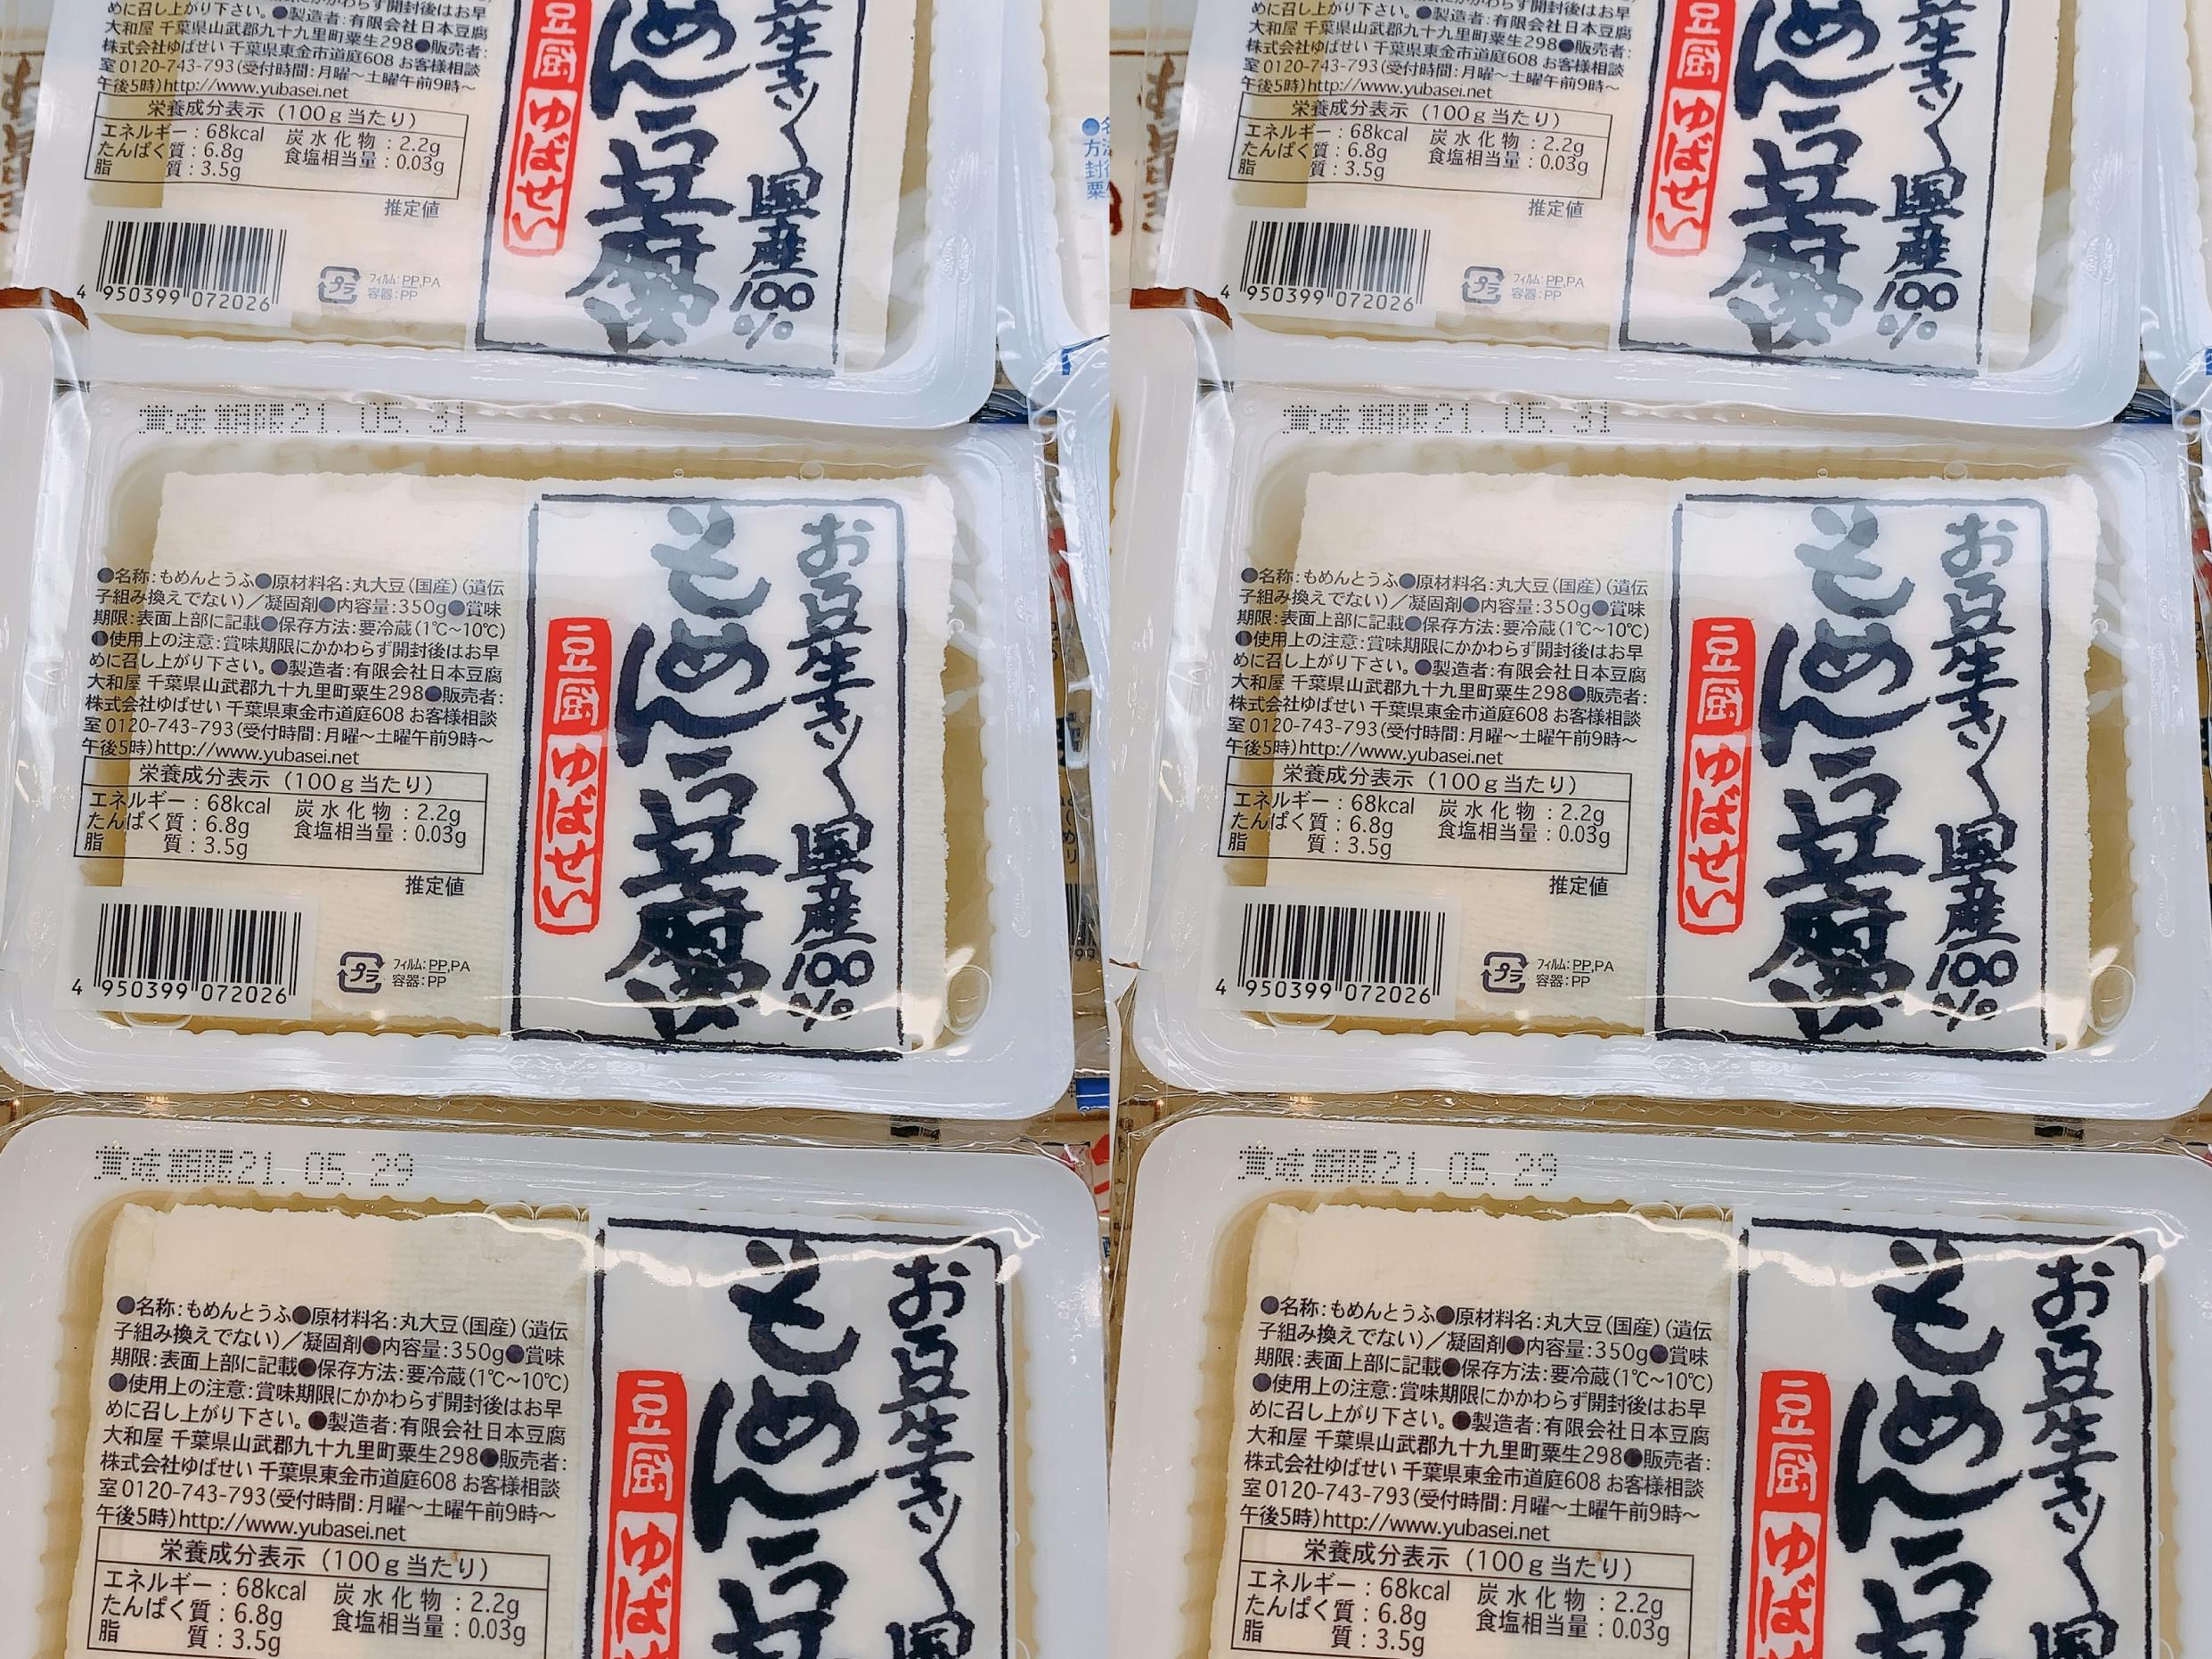 6-1　木綿豆腐 (350g)